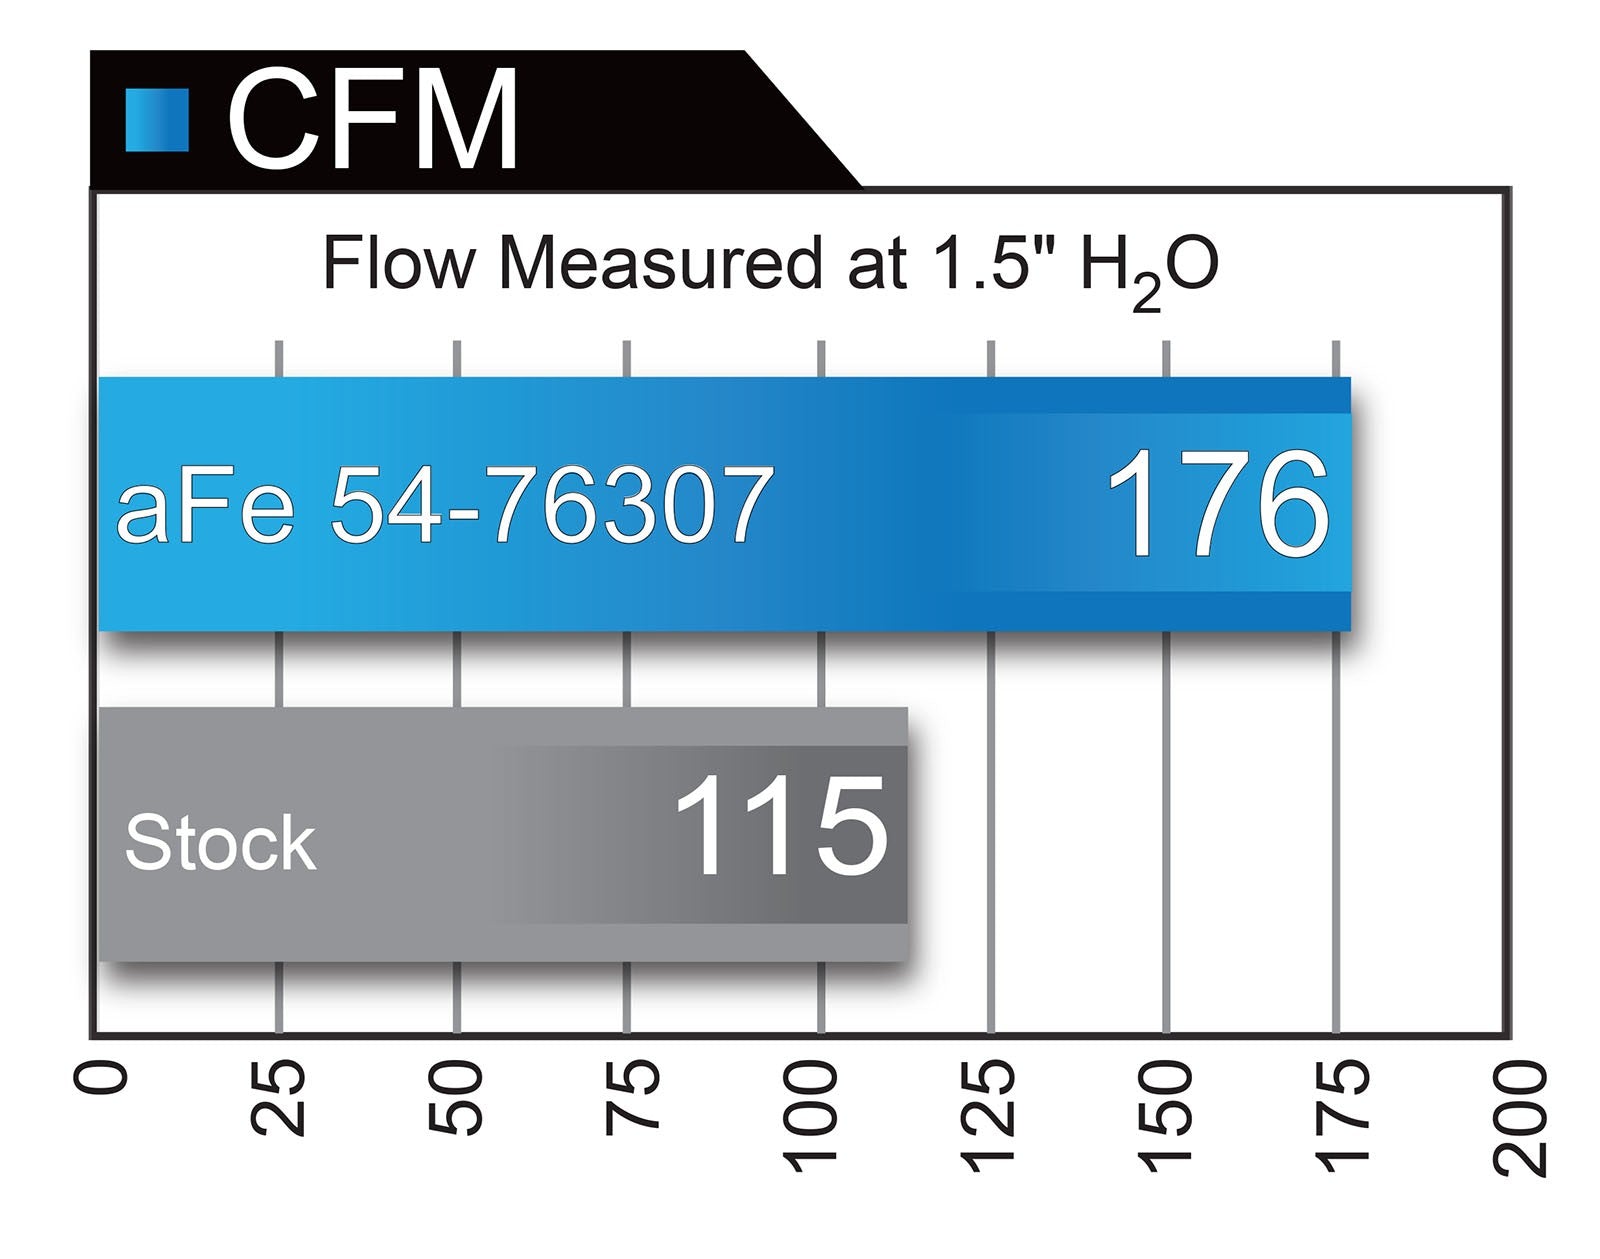 Momentum GT Cold Air Intake System w/ Pro DRY S Media BMW 328d/dx (F30/31) 14-18 L4-2.0L (td) N47